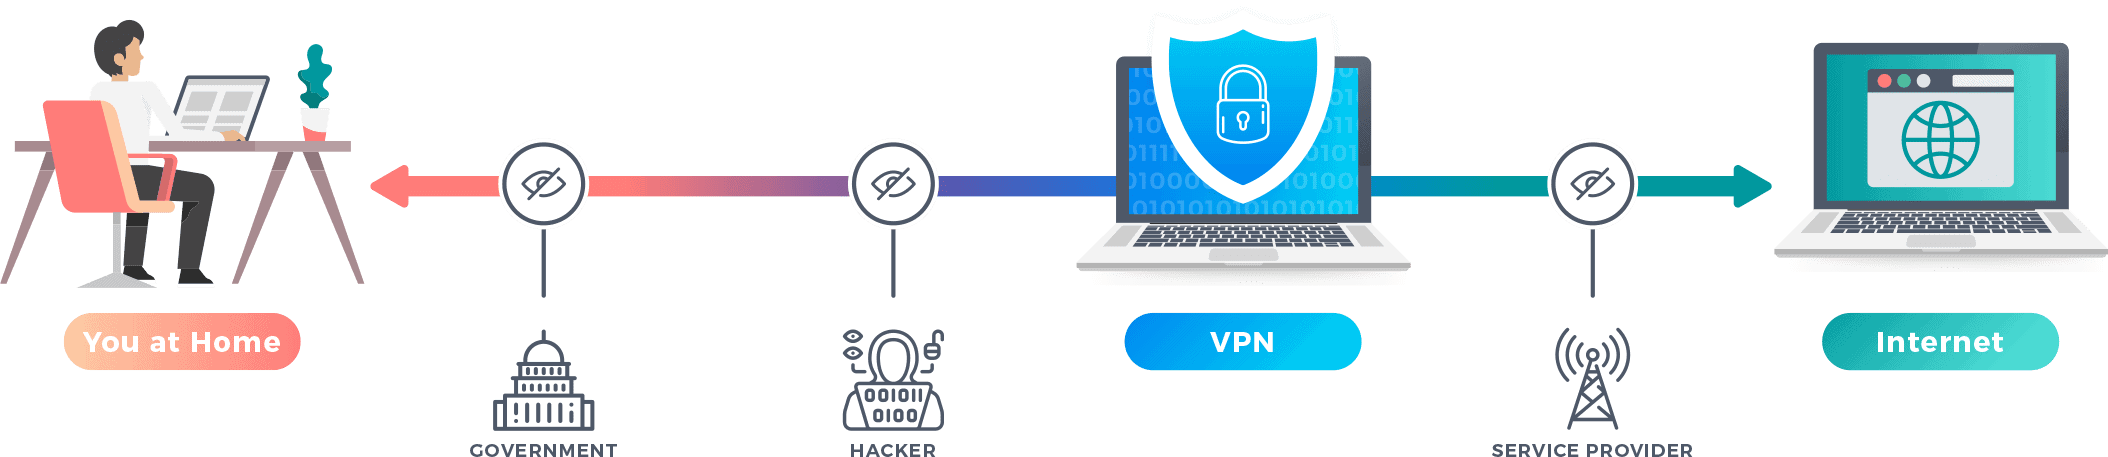 Какие впн будут работать. VPN. VPN картинки. VPN сервисы. Как работает впн.